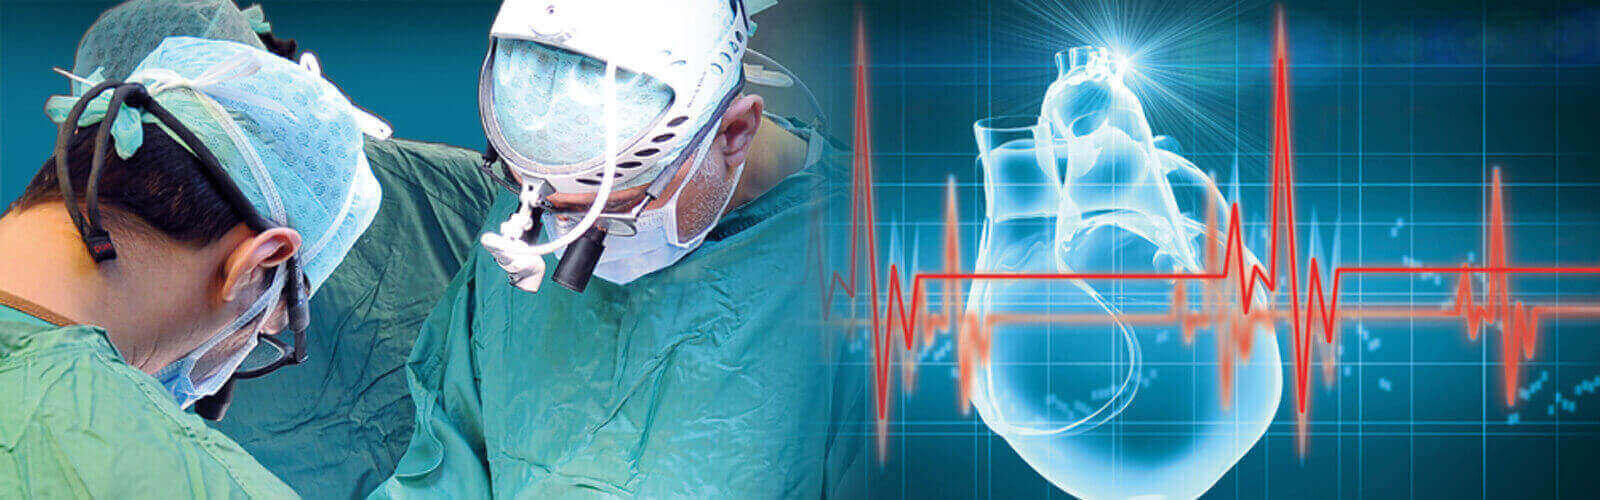 Coronary Angioplasty Surgery in Maryland